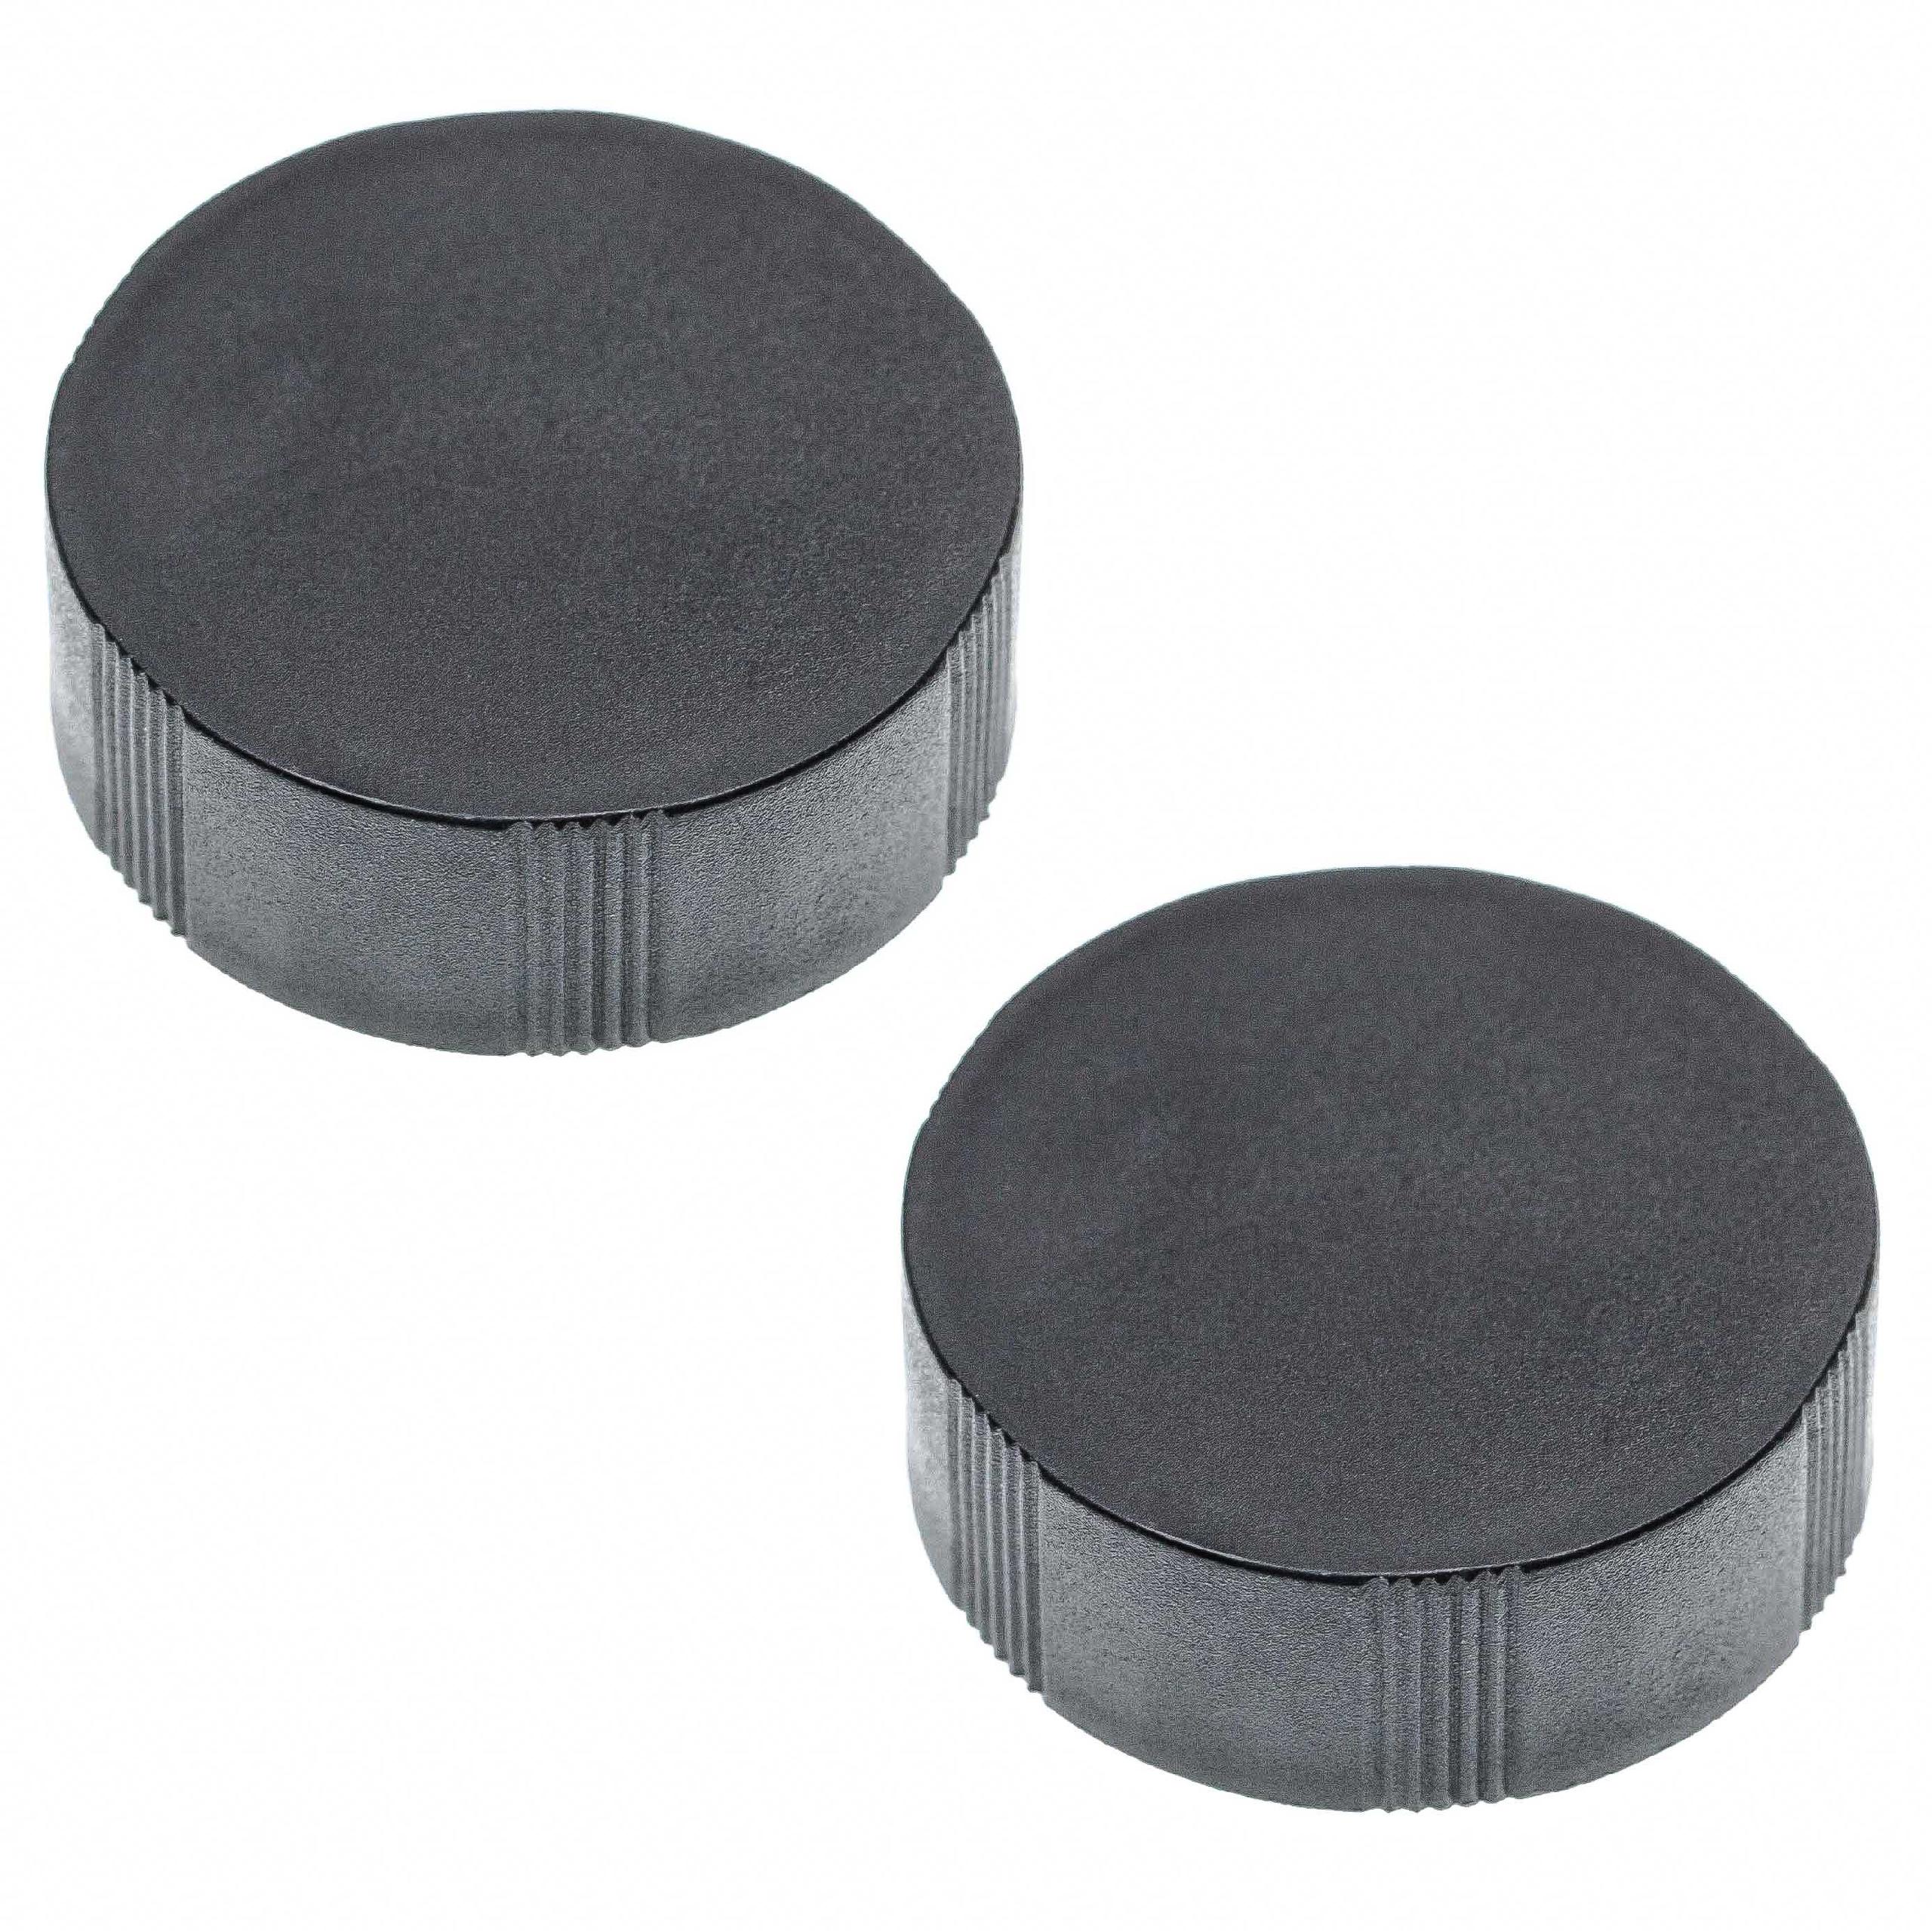 2x Objektivdeckel passend für Fernglas-Objektive mit 30 mm Durchmesser - Schwarz, Aufsteckbar